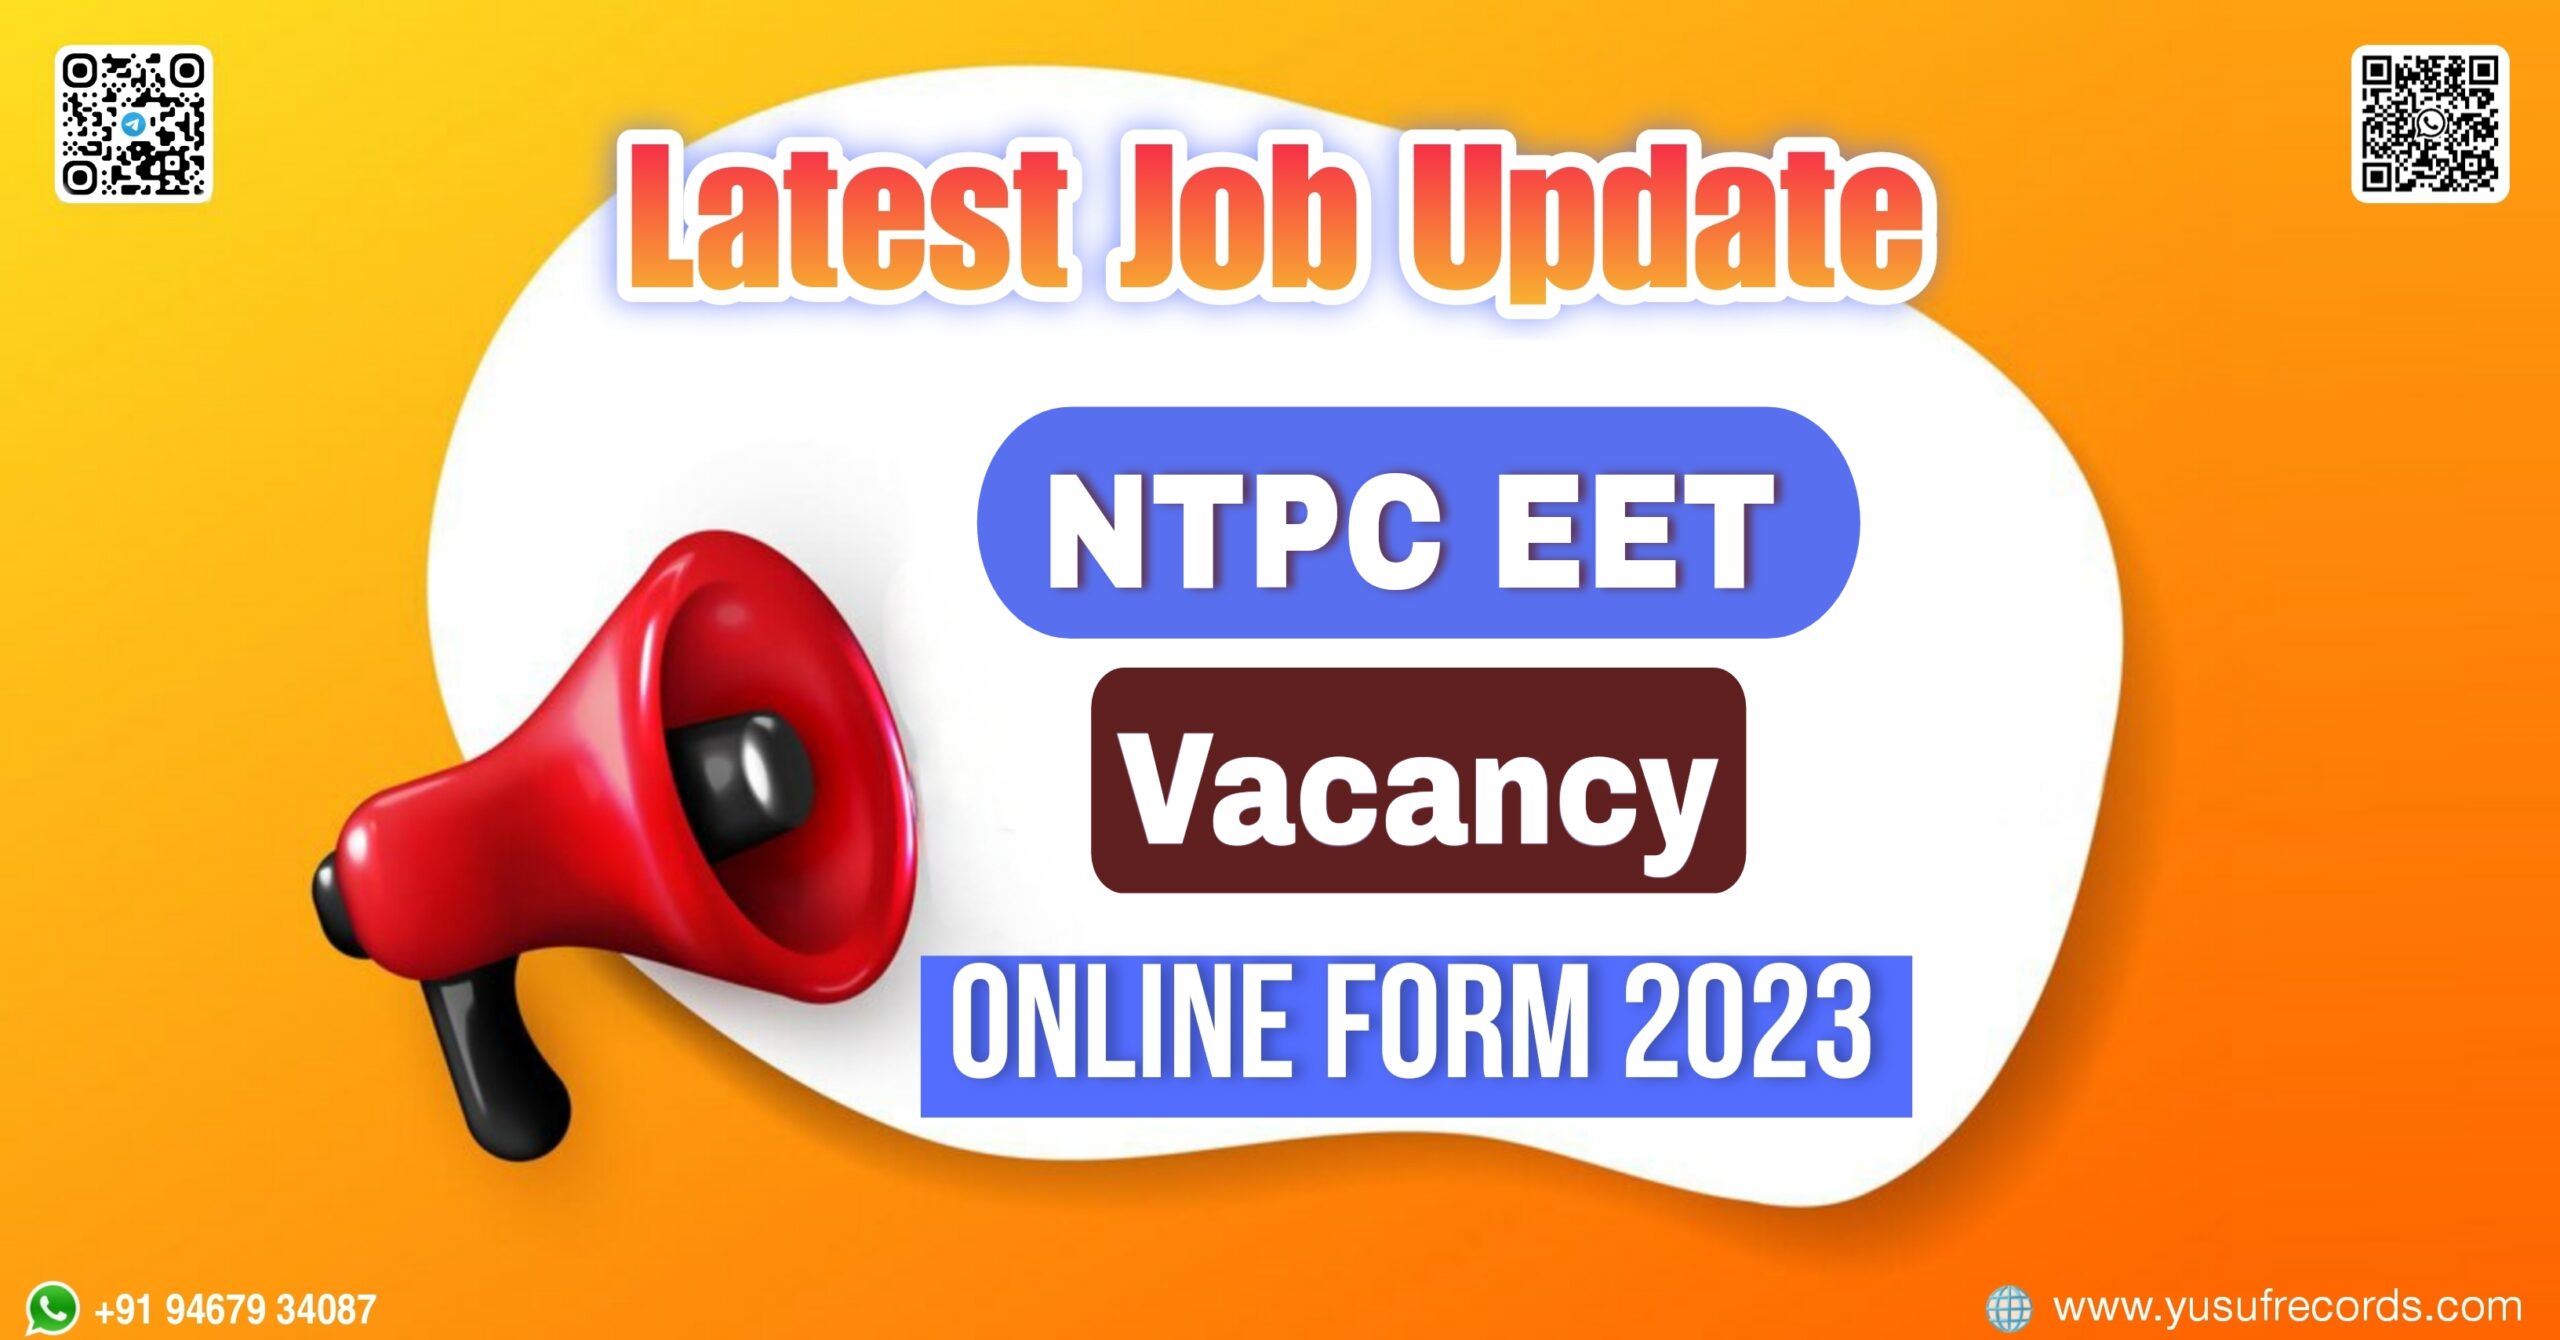 NTPC EET Vacancy Online Form 2023 yusufrecords latest jobs update